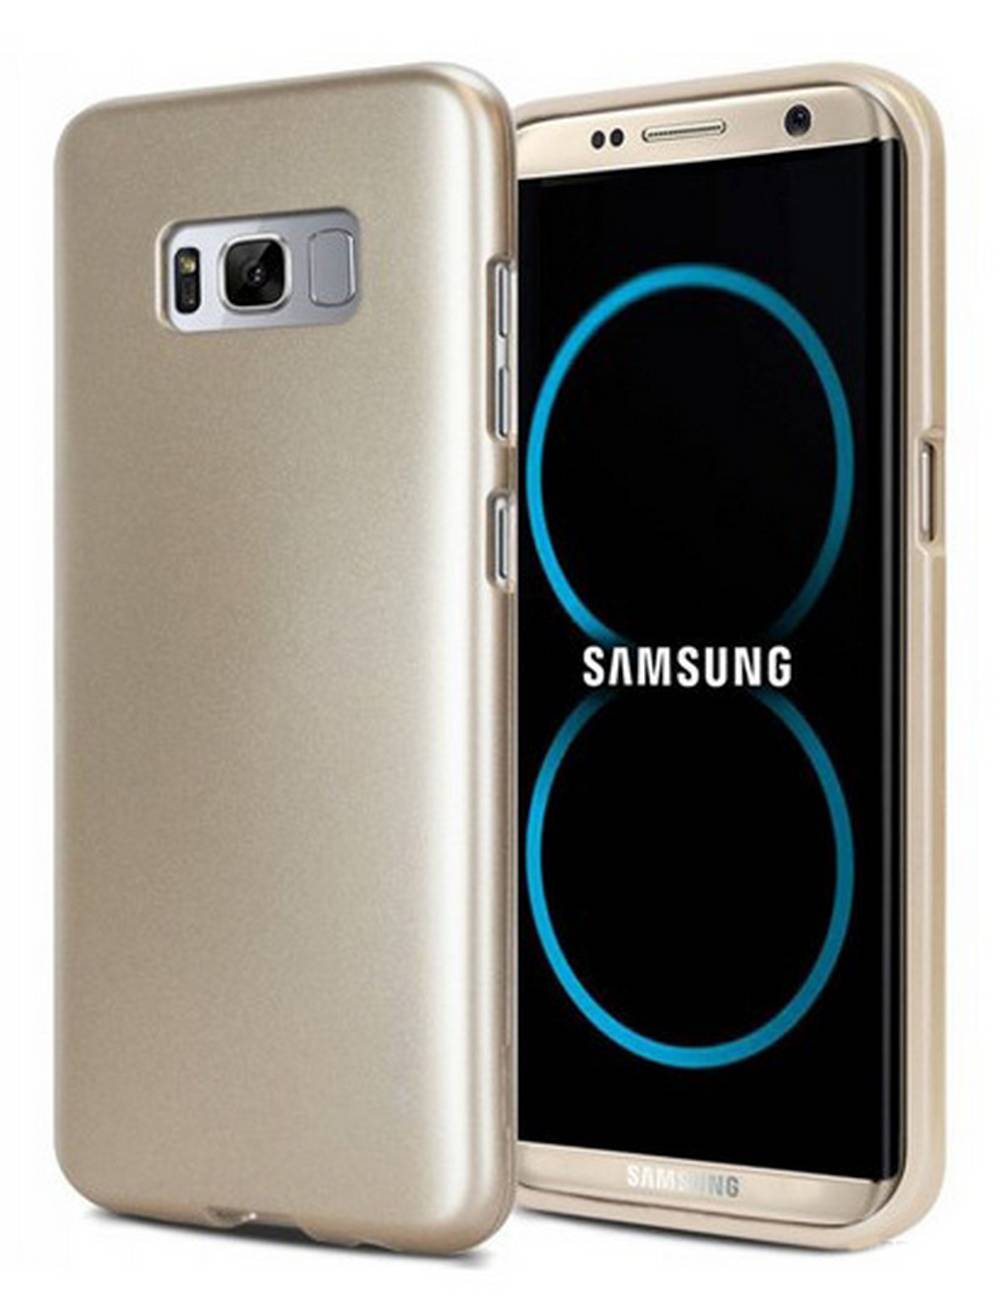 Θήκη Goospery iJelly για Samsung SM-G950F Galaxy S8 Χρυσαφί by Mercury